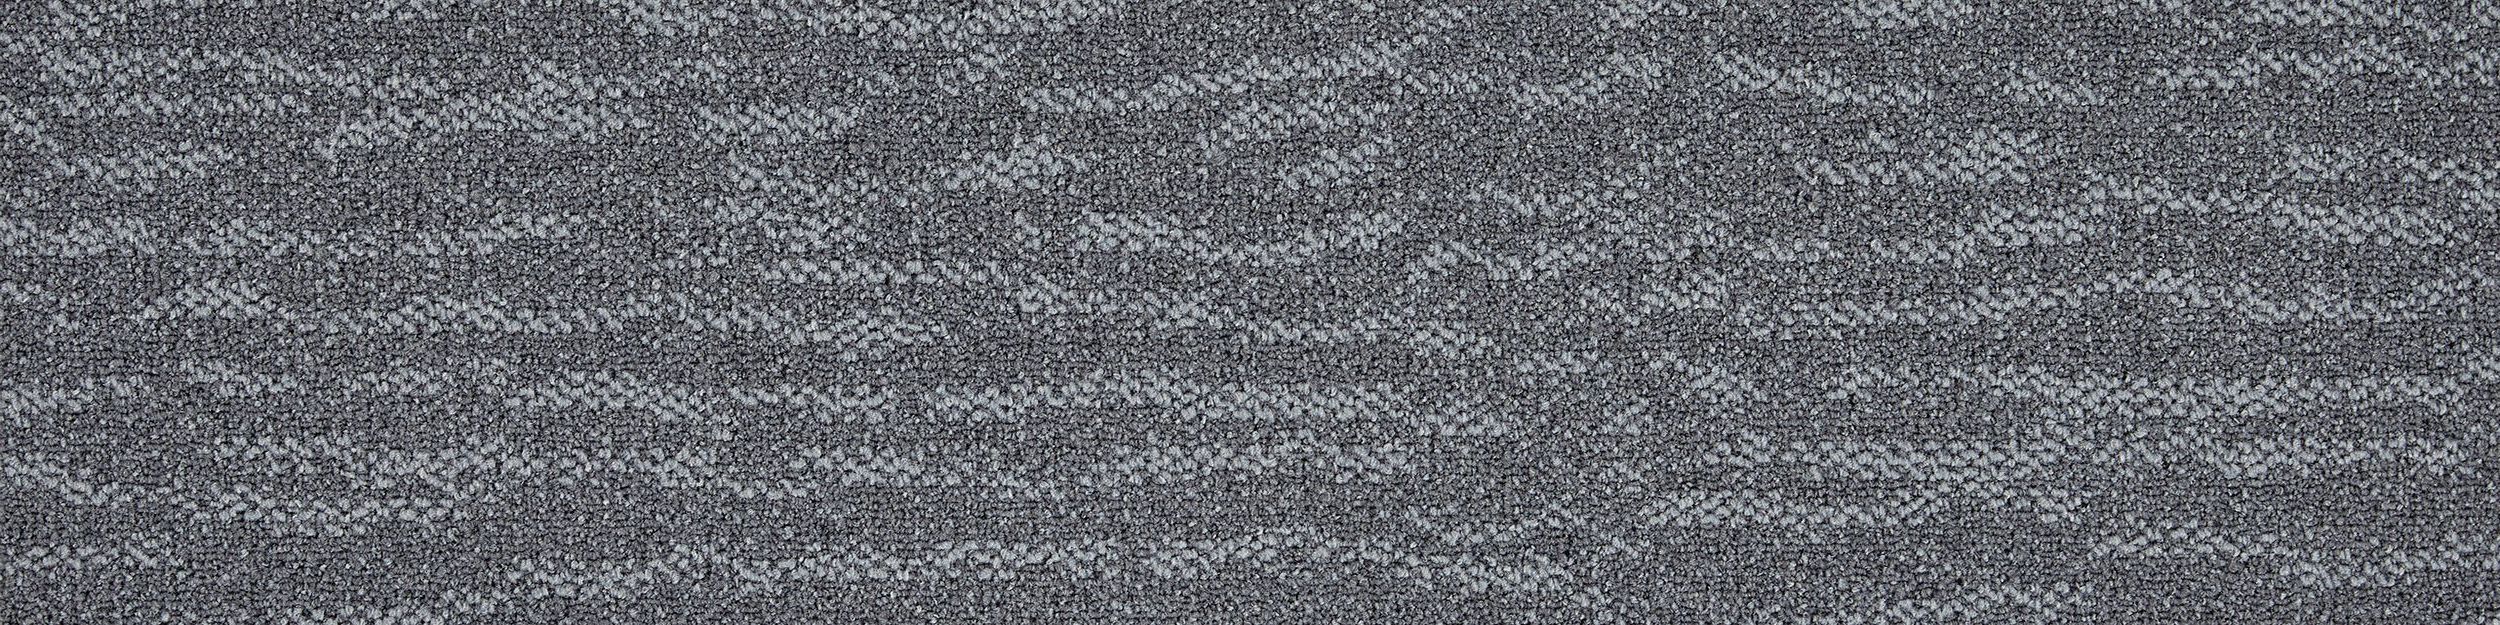 Works Fluid Carpet Tile In Concrete Bildnummer 2